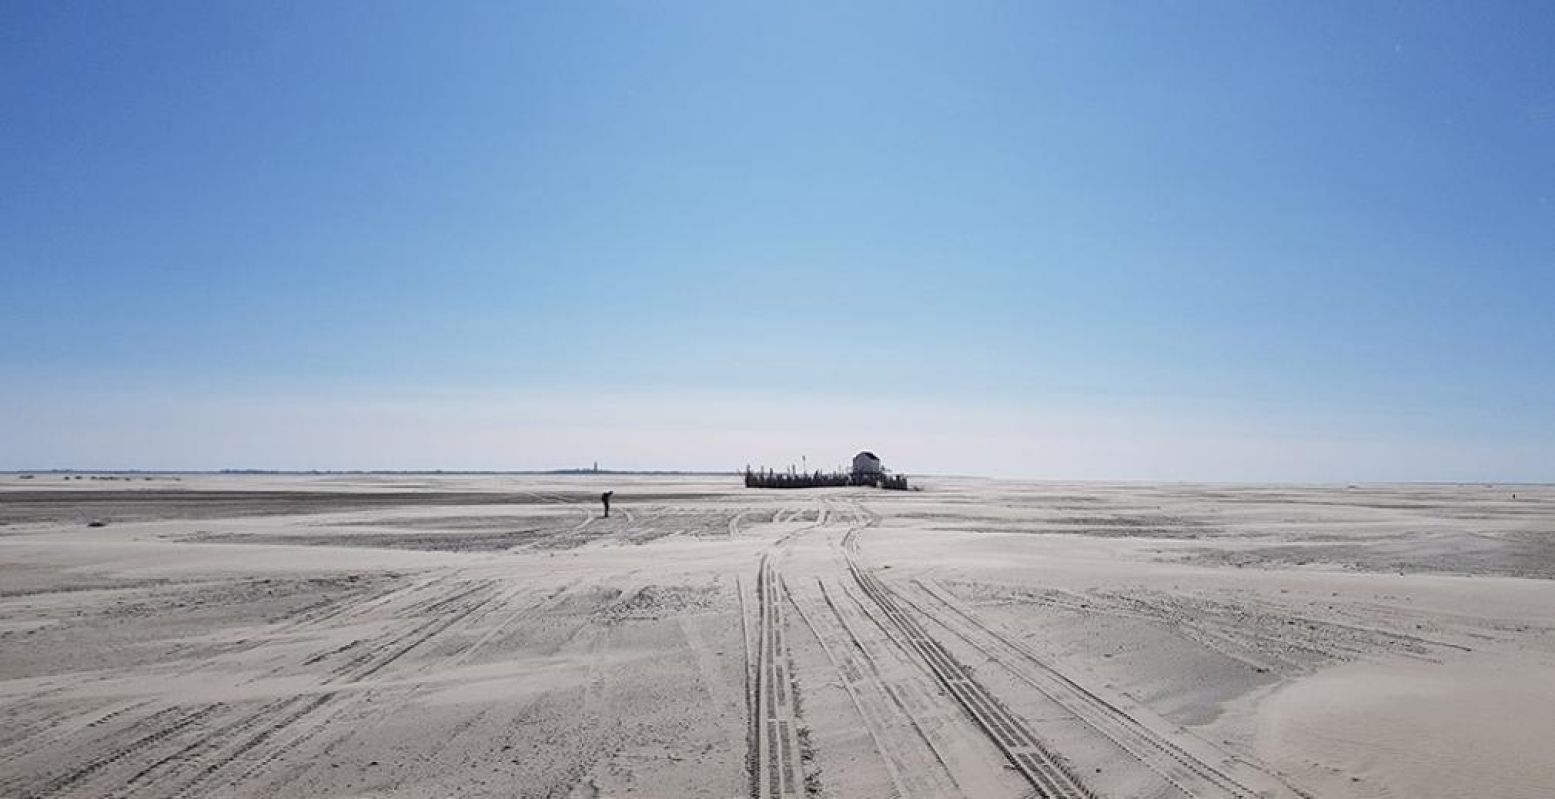 Het Drenkelingenhuisje op de grote zandvlakte de Vliehors in het westen van het eiland. Het is nu een Juttersmuseum. Foto: DagjeWeg.NL © Tonny van Oosten